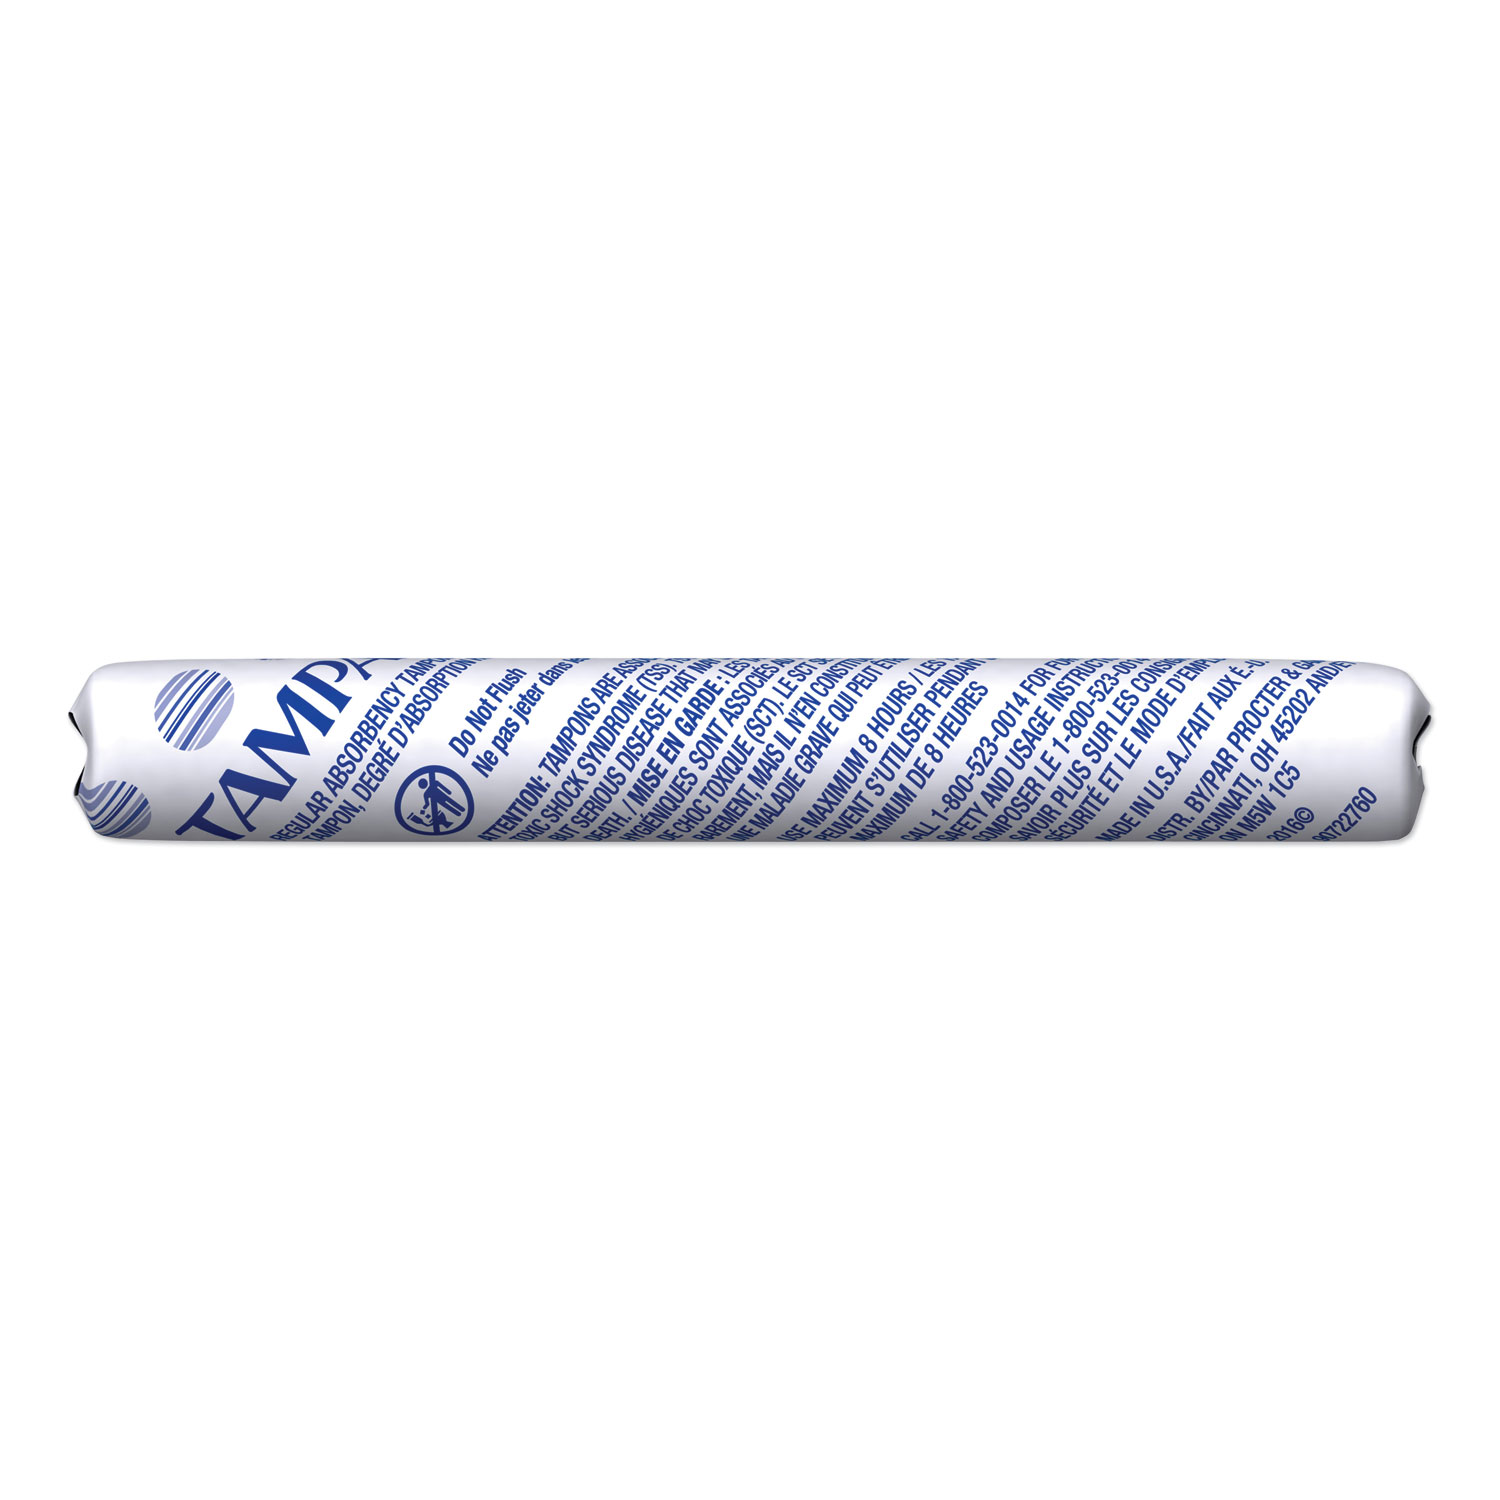  Tampax 10073010025001 Tampons for Vending, Original, Regular Absorbency, 500/Carton (PGC025001) 